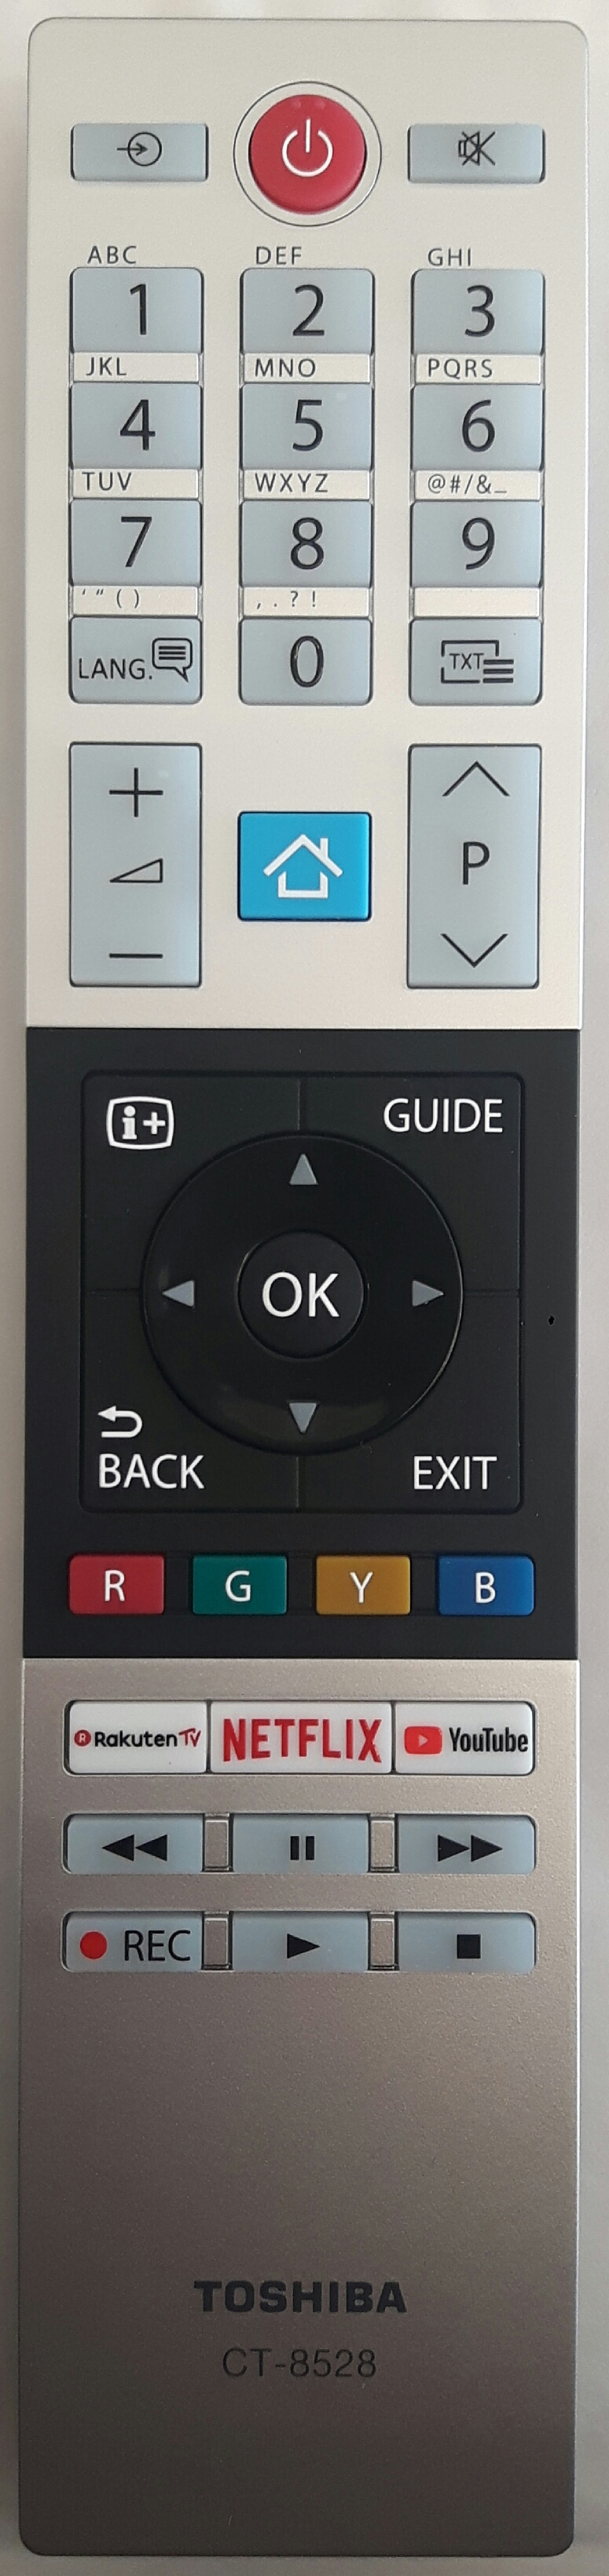 TOSHIBA 10120429 Remote Control Original 